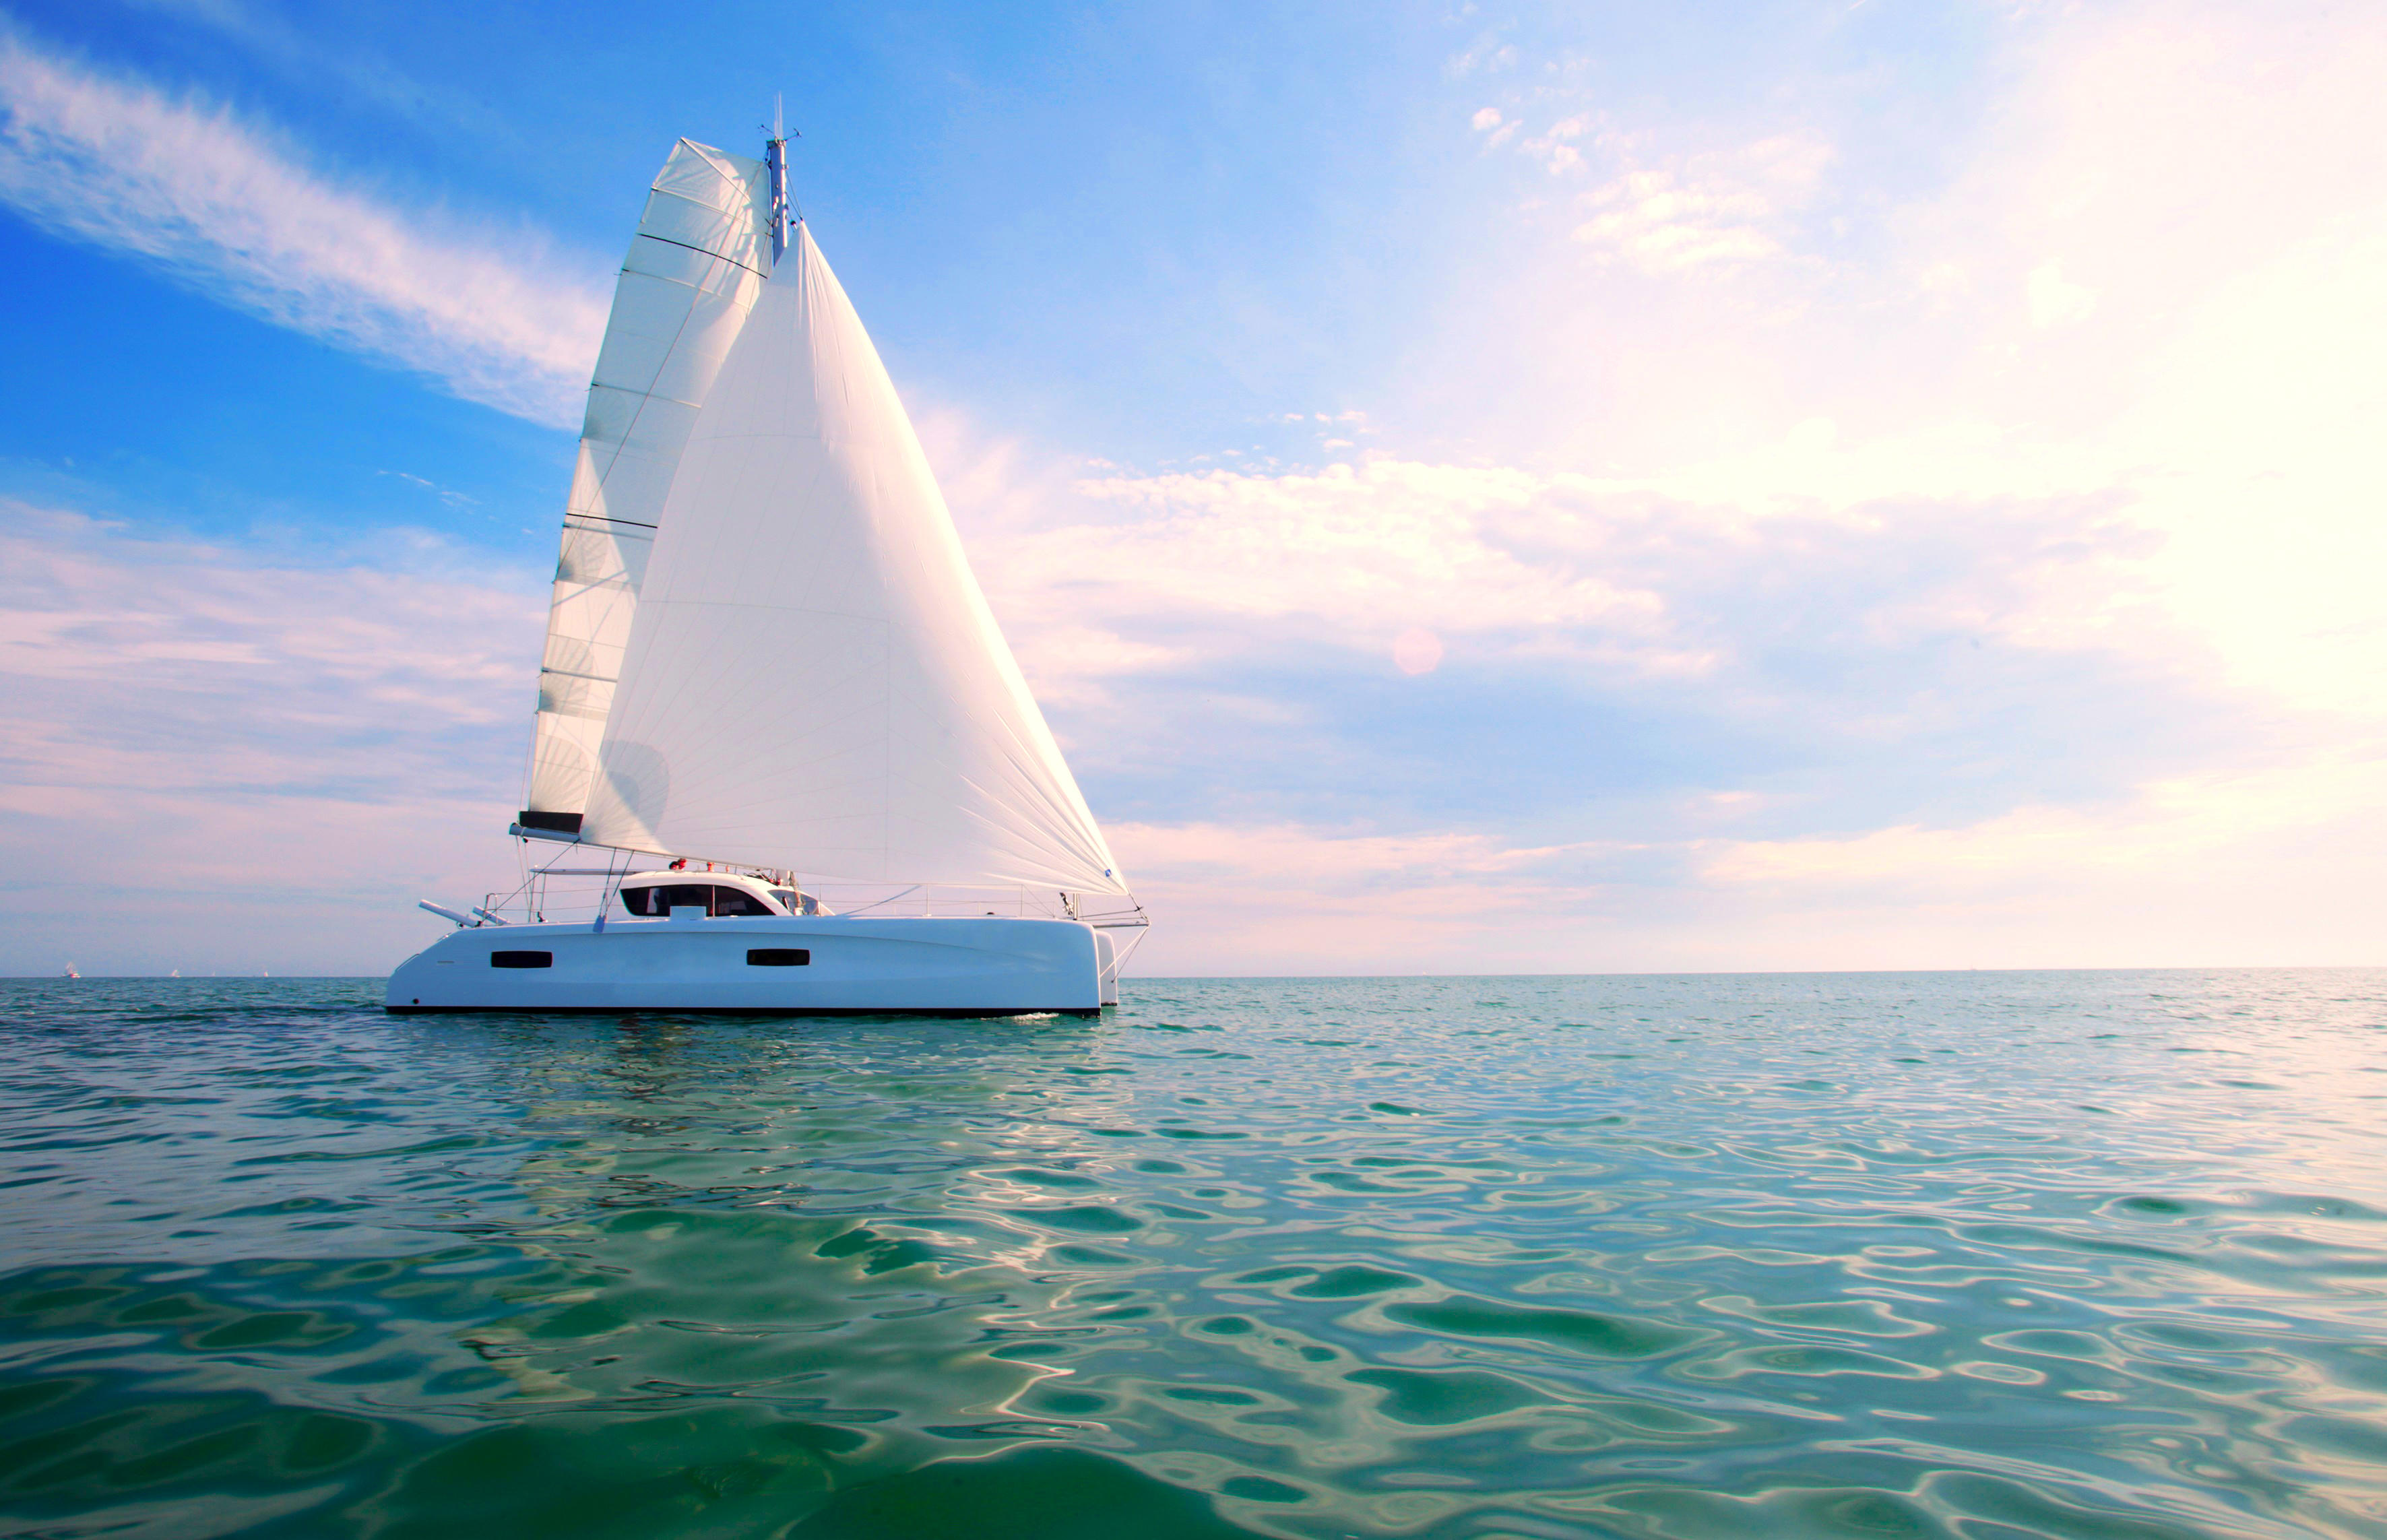 Бесплатное фото Скачать яхта, море картинки бесплатно